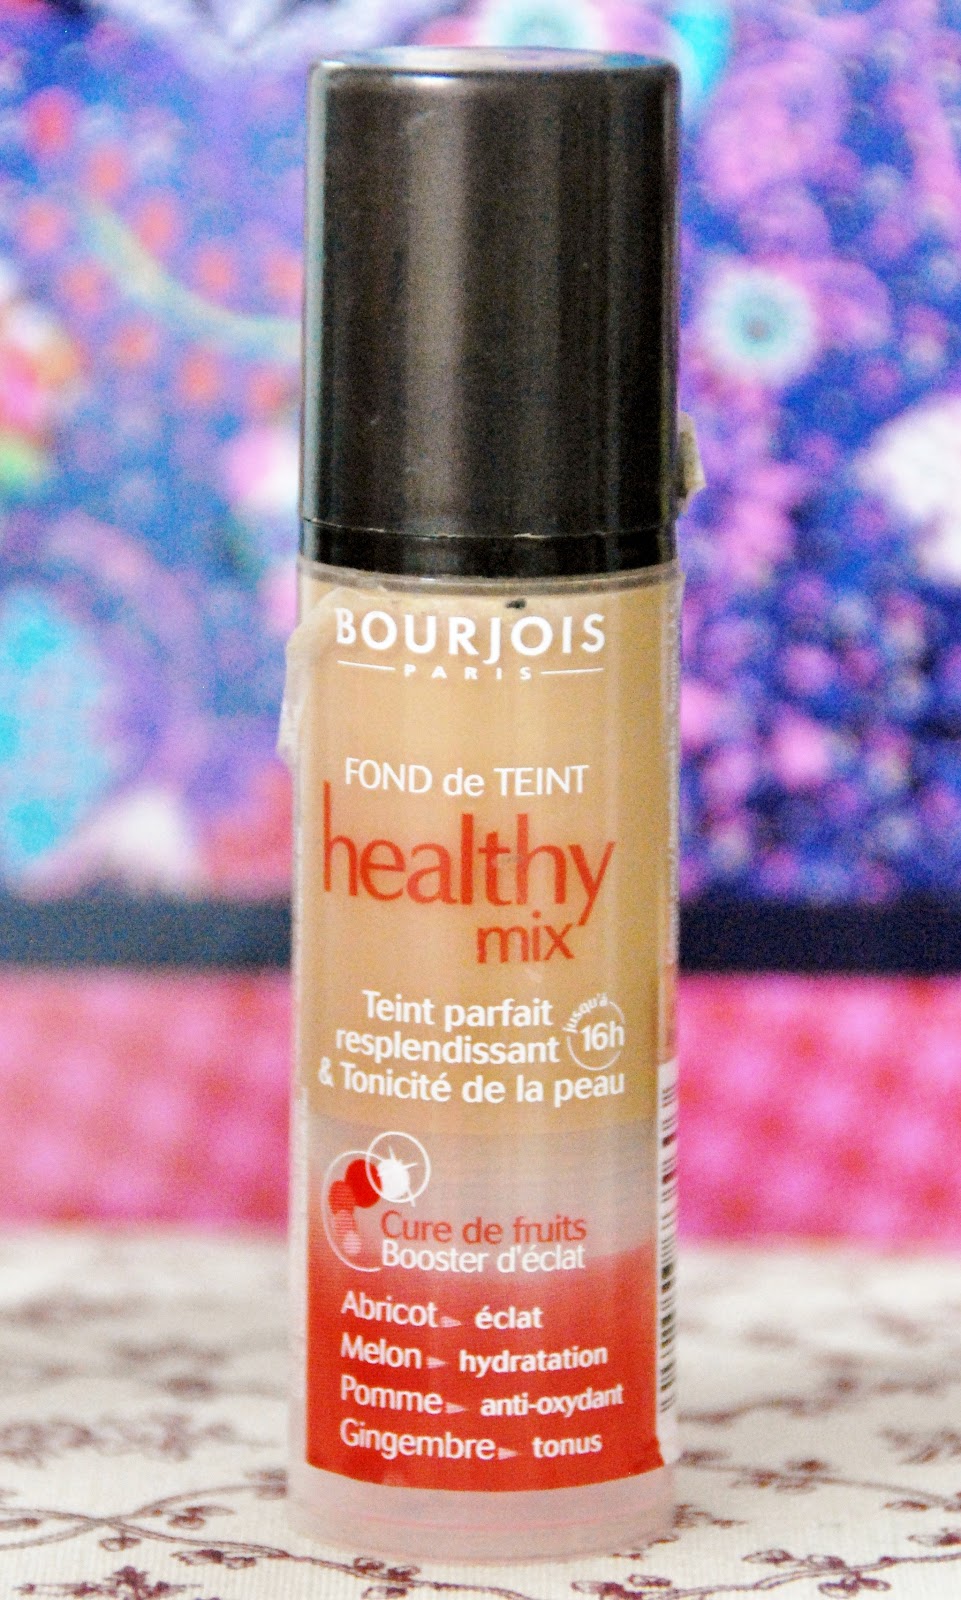 Fond de Teint Healthy Mix Bourjois Beauté test